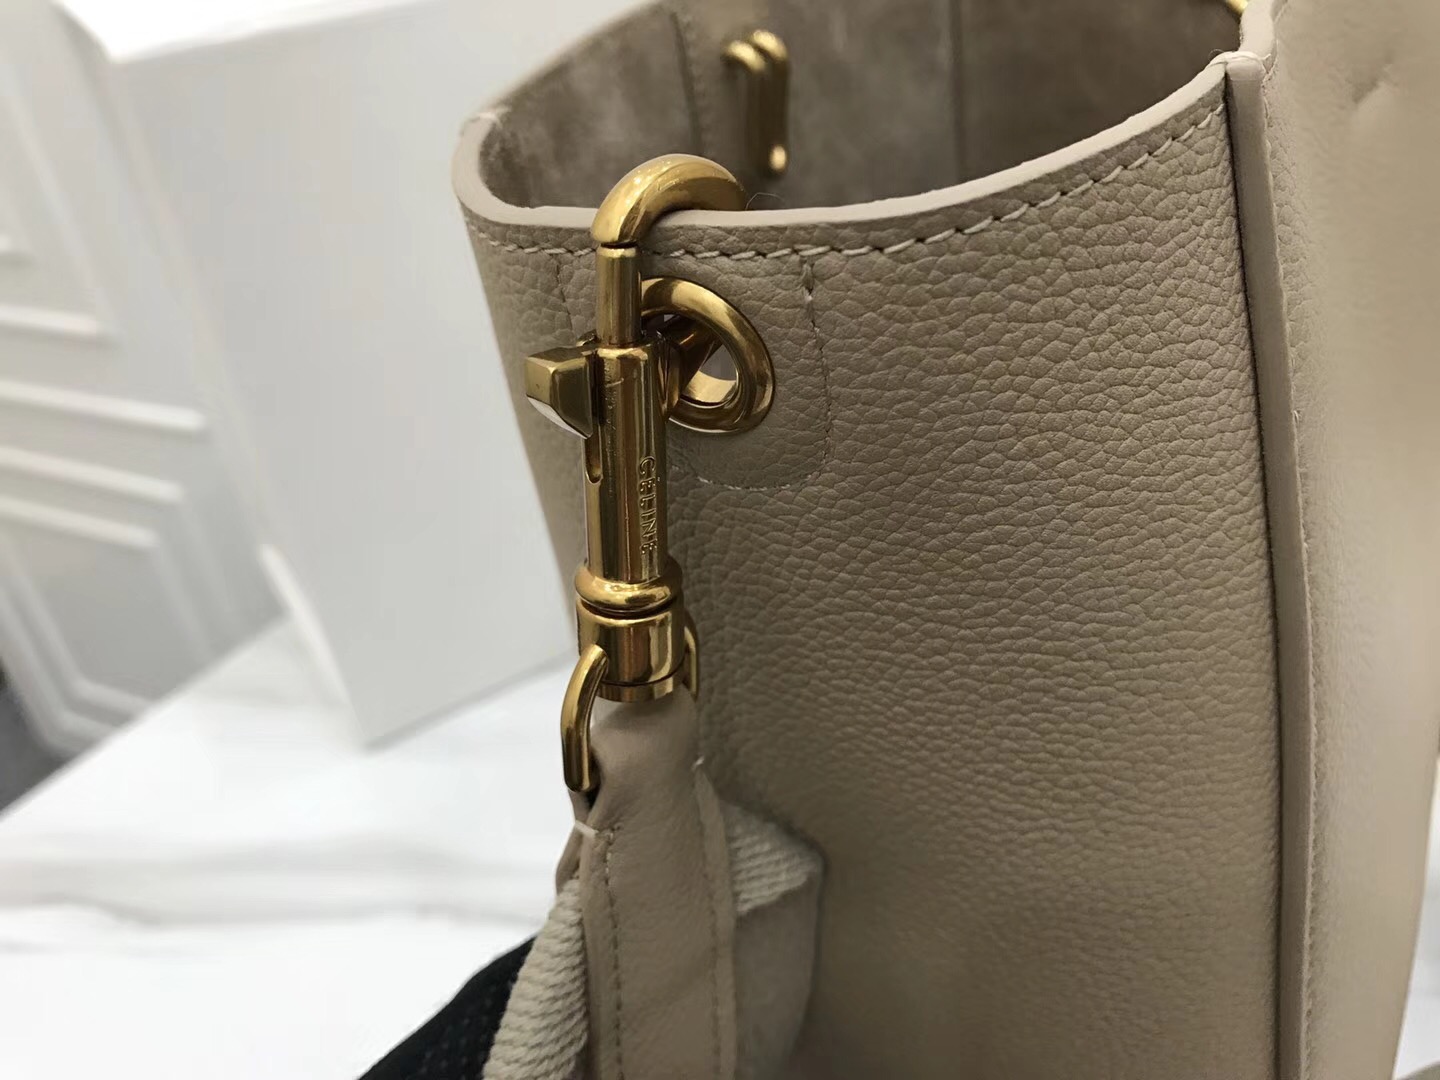 Celine Calfskin Leather Shoulder Bag 5530 grey